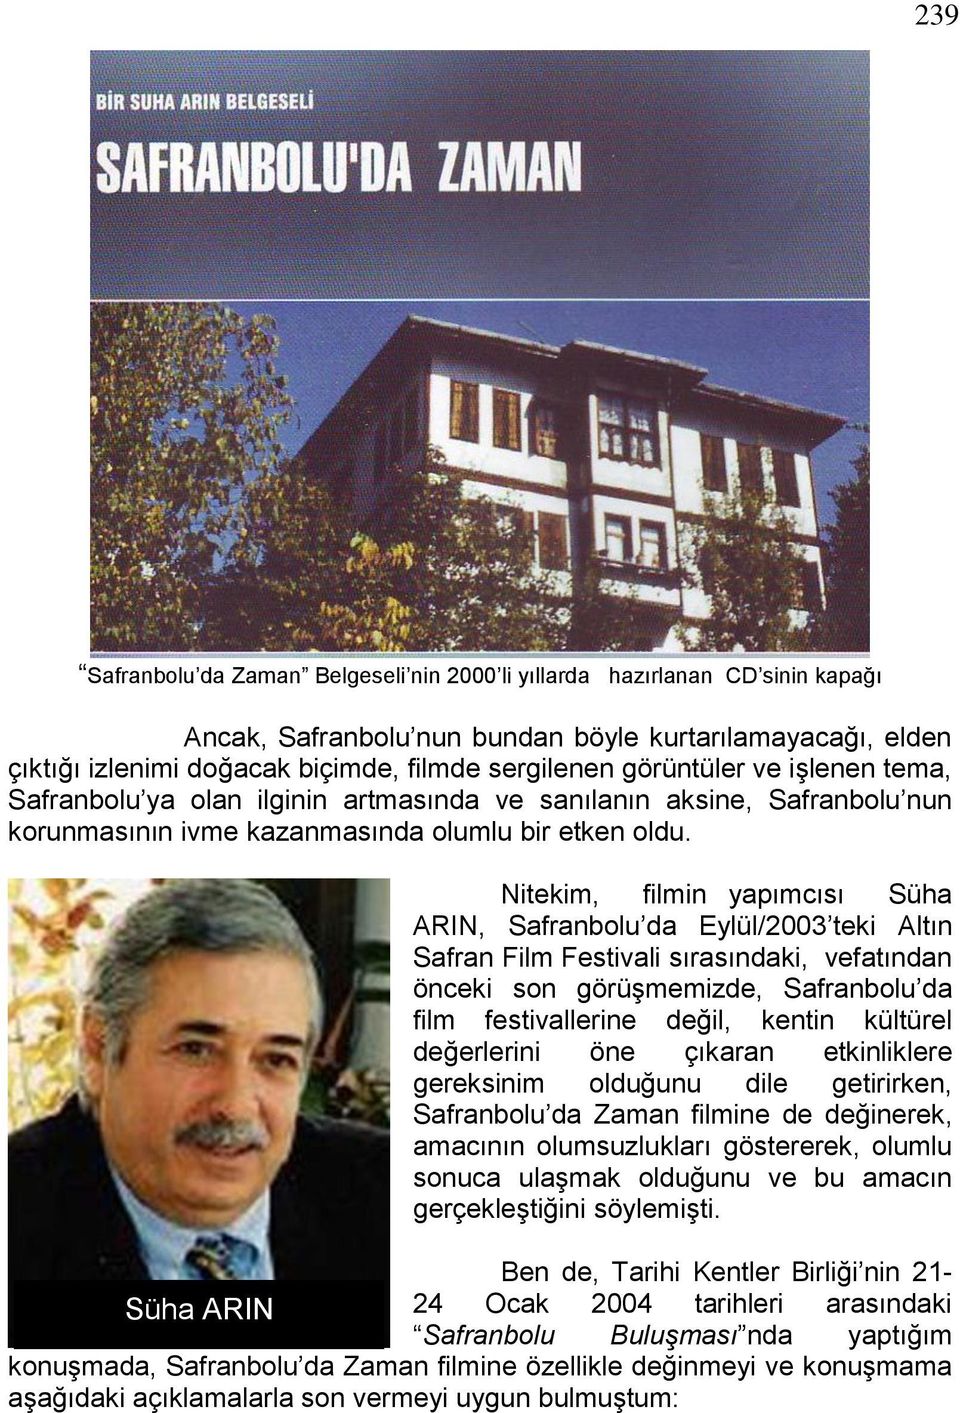 Nitekim, filmin yapımcısı Süha ARIN, Safranbolu da Eylül/2003 teki Altın Safran Film Festivali sırasındaki, vefatından önceki son görüģmemizde, Safranbolu da film festivallerine değil, kentin